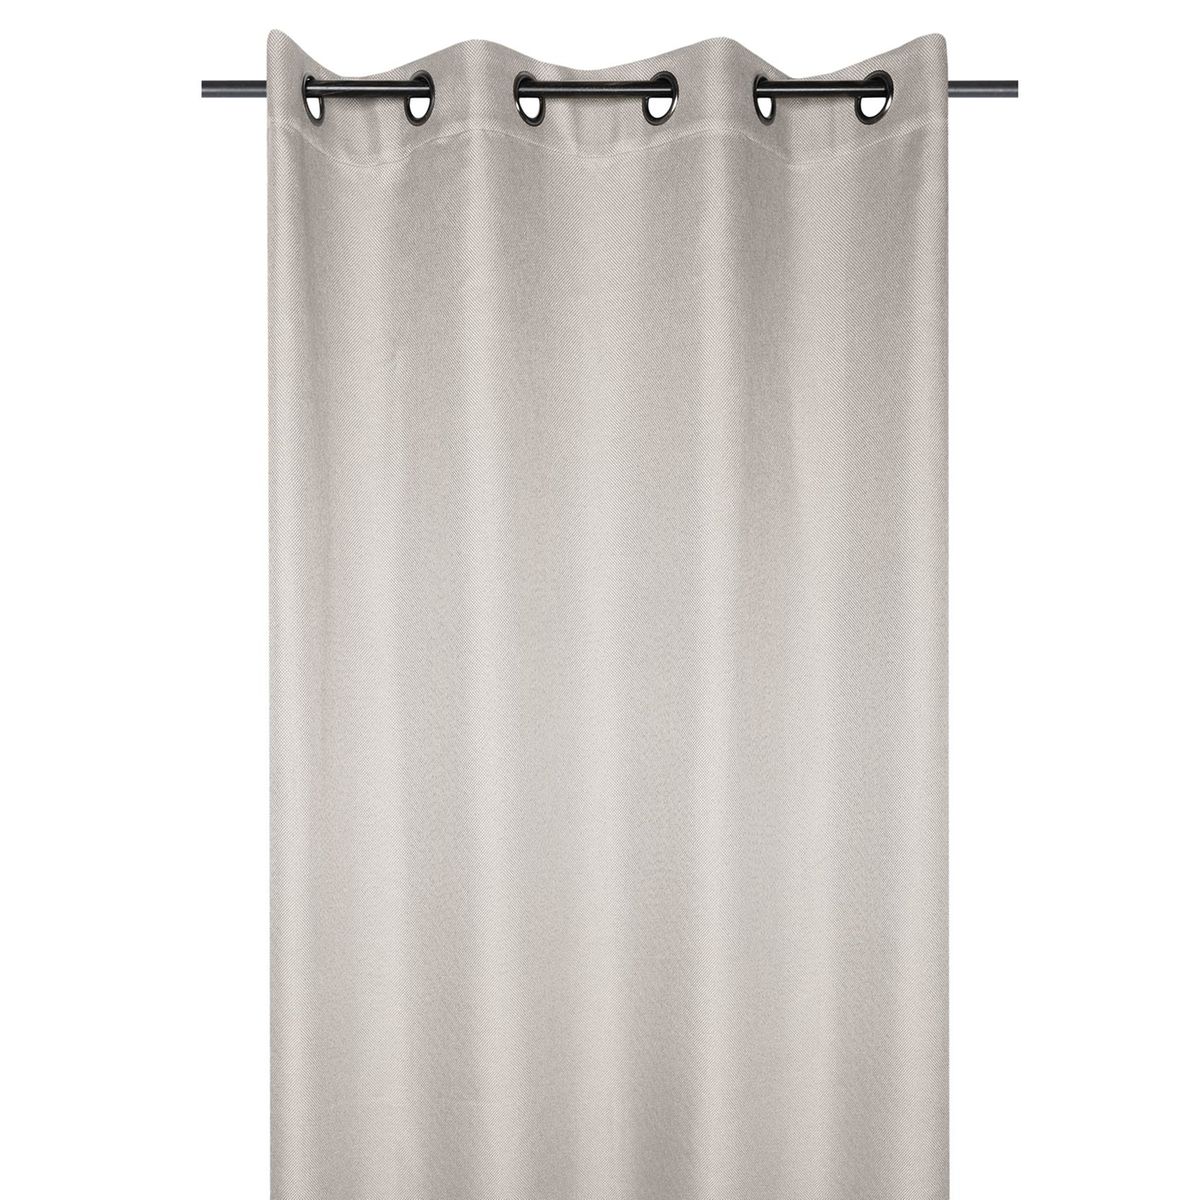 Rideau isolant doublé polaire polyester gris clair 140x260 cm